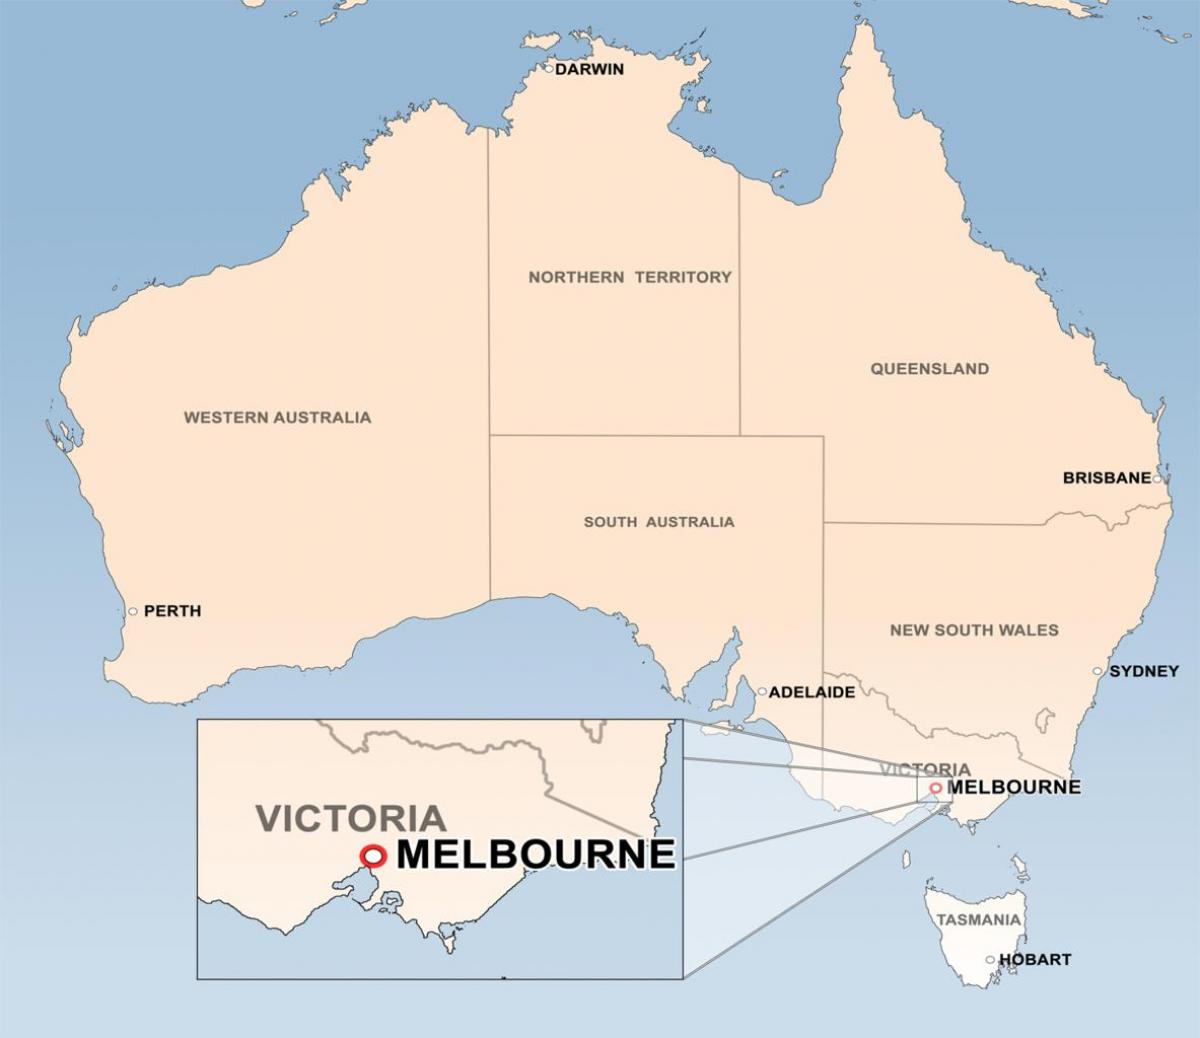 რუკა მელბურნი ავსტრალია